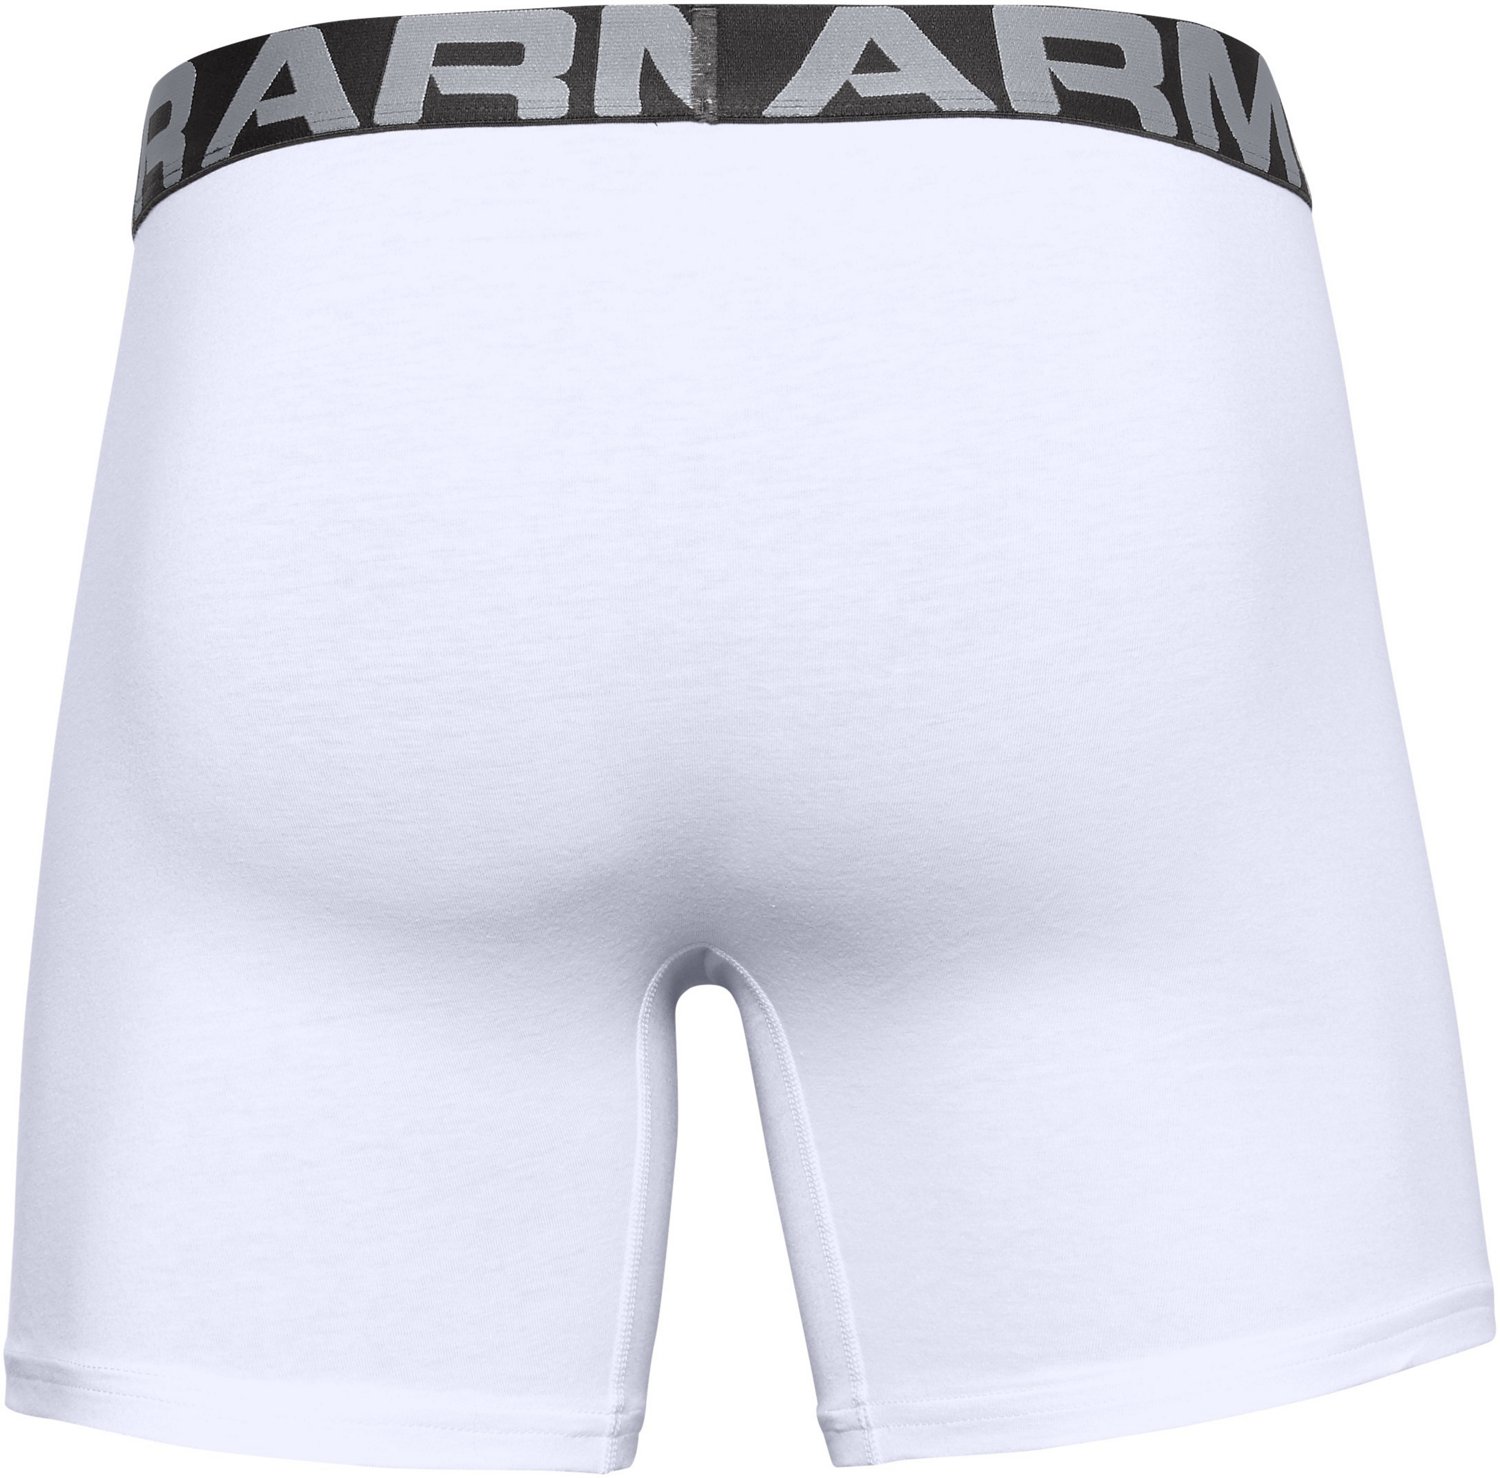 Under Armour Men's Charged Cotton 6 Boxerjock – 3-Pack Underwear - Hibbett